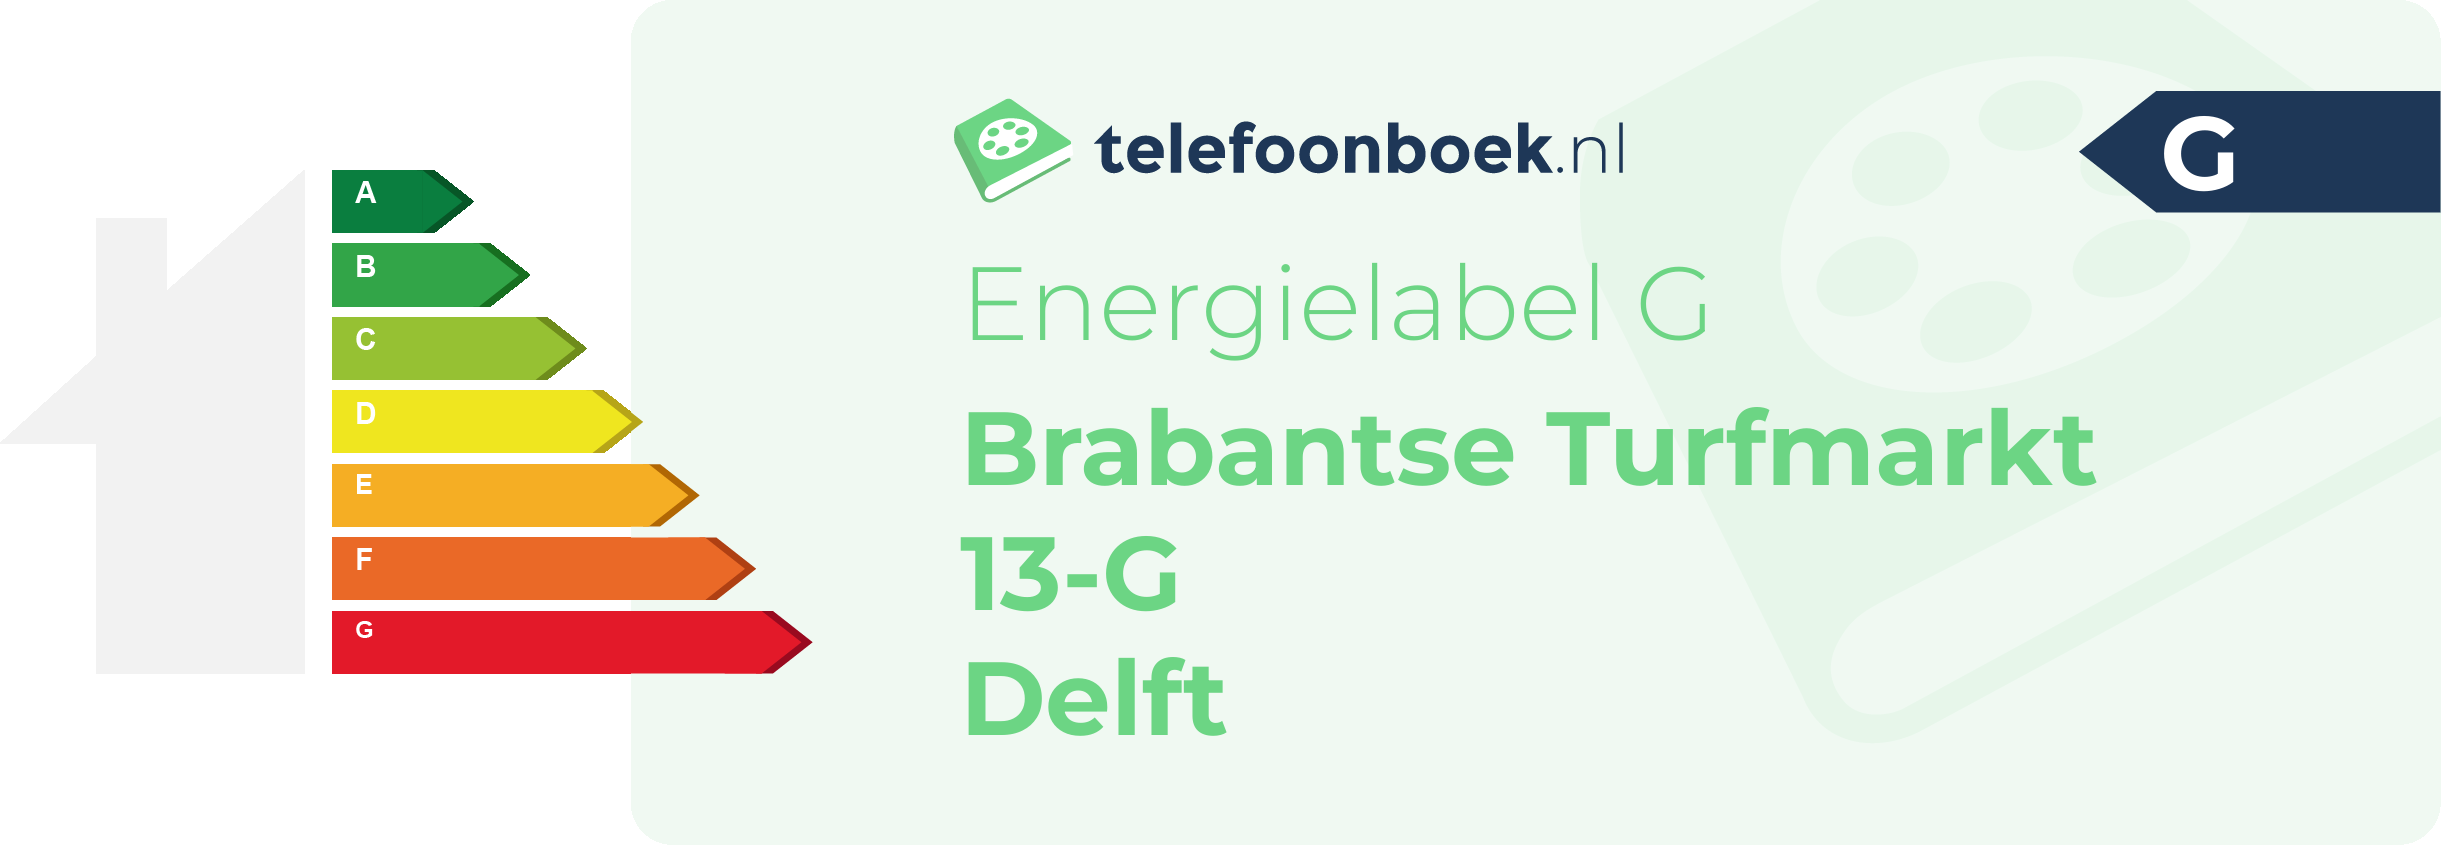 Energielabel Brabantse Turfmarkt 13-G Delft